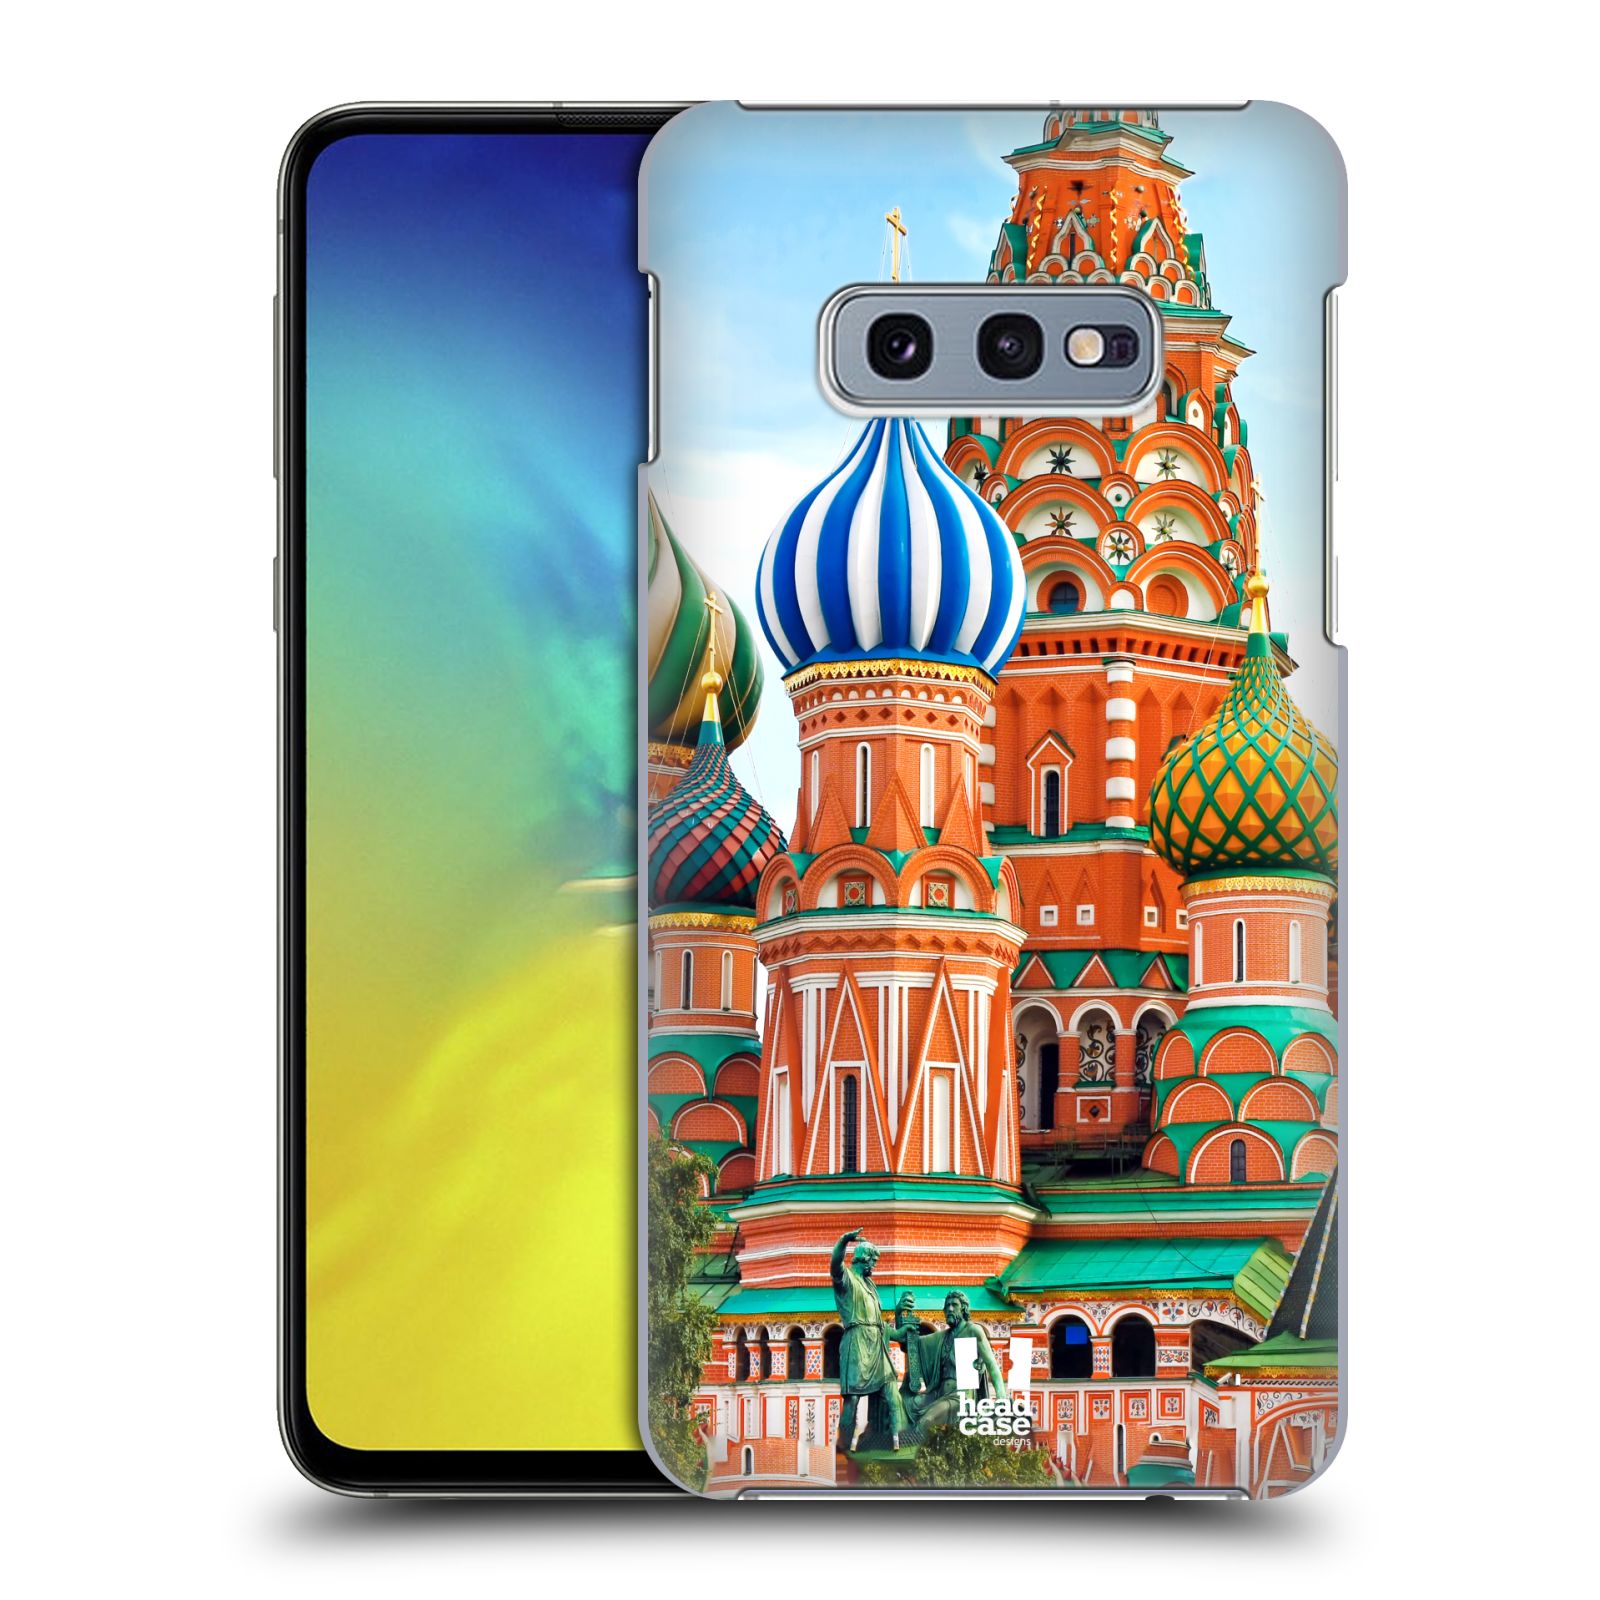 Pouzdro na mobil Samsung Galaxy S10e - HEAD CASE - vzor Města foto náměstí RUSKO,MOSKVA, RUDÉ NÁMĚSTÍ